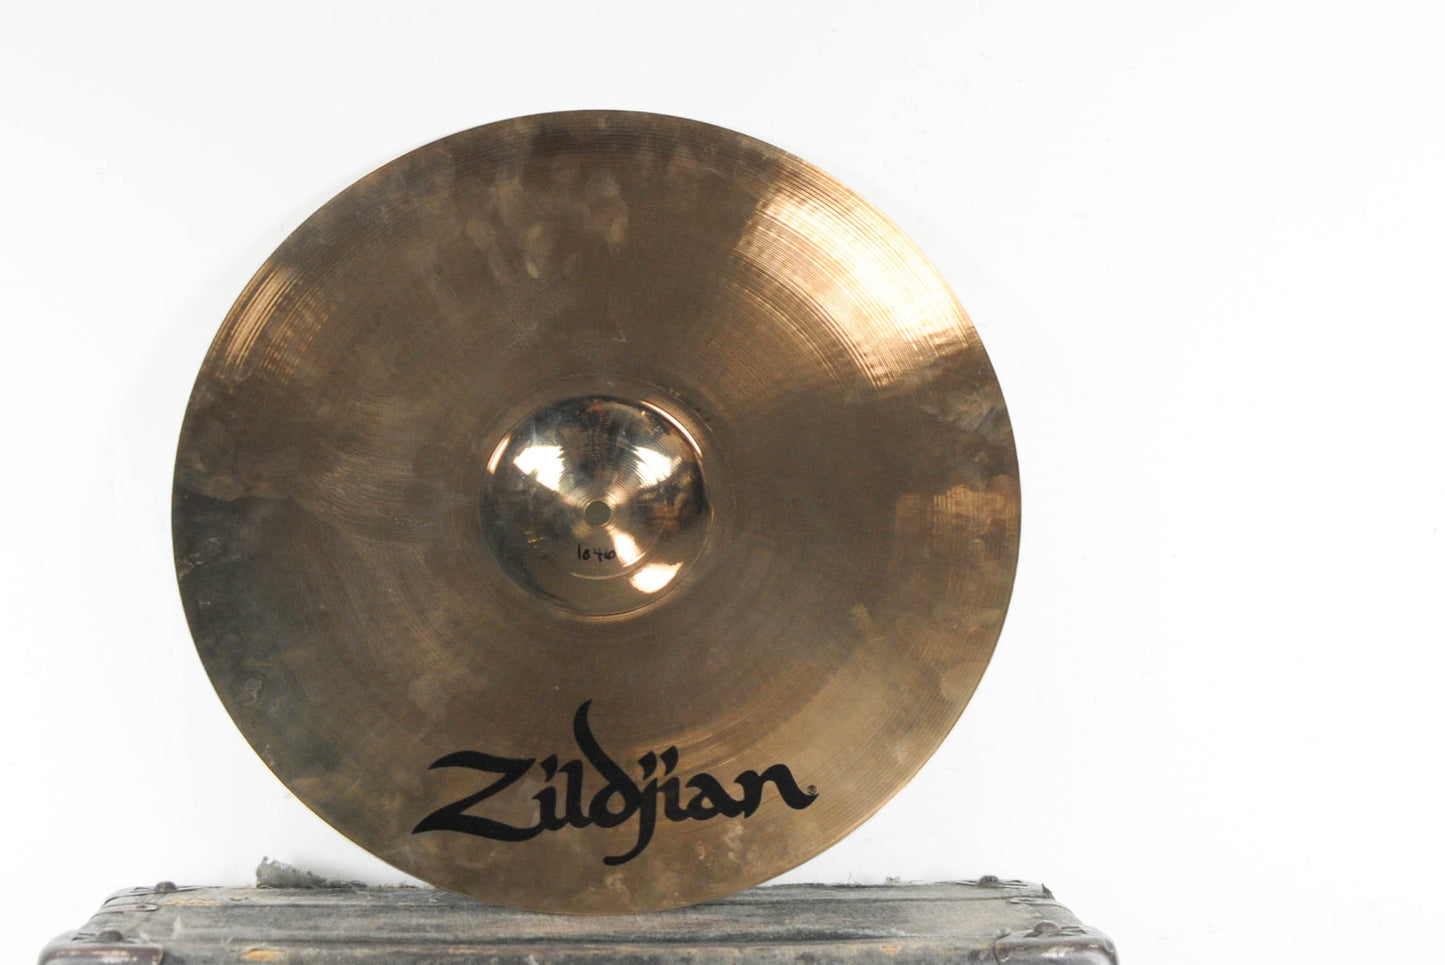 2011 Zildjian 16" A Custom Crash Cymbal 1046g